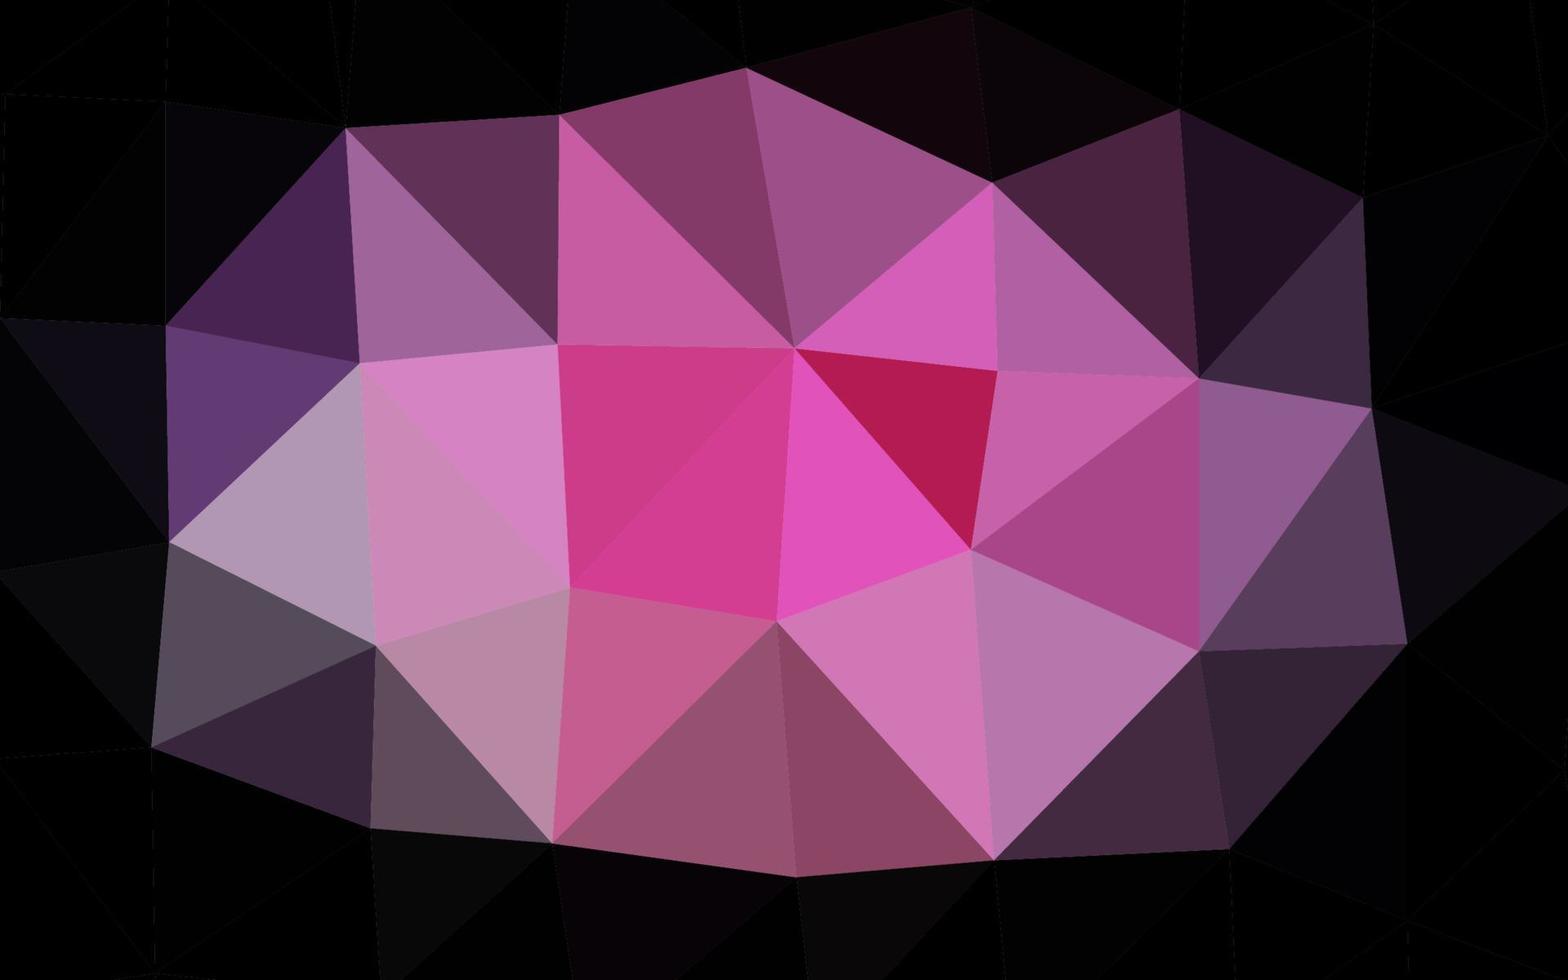 copertina poligonale astratta vettoriale rosa chiaro, blu.